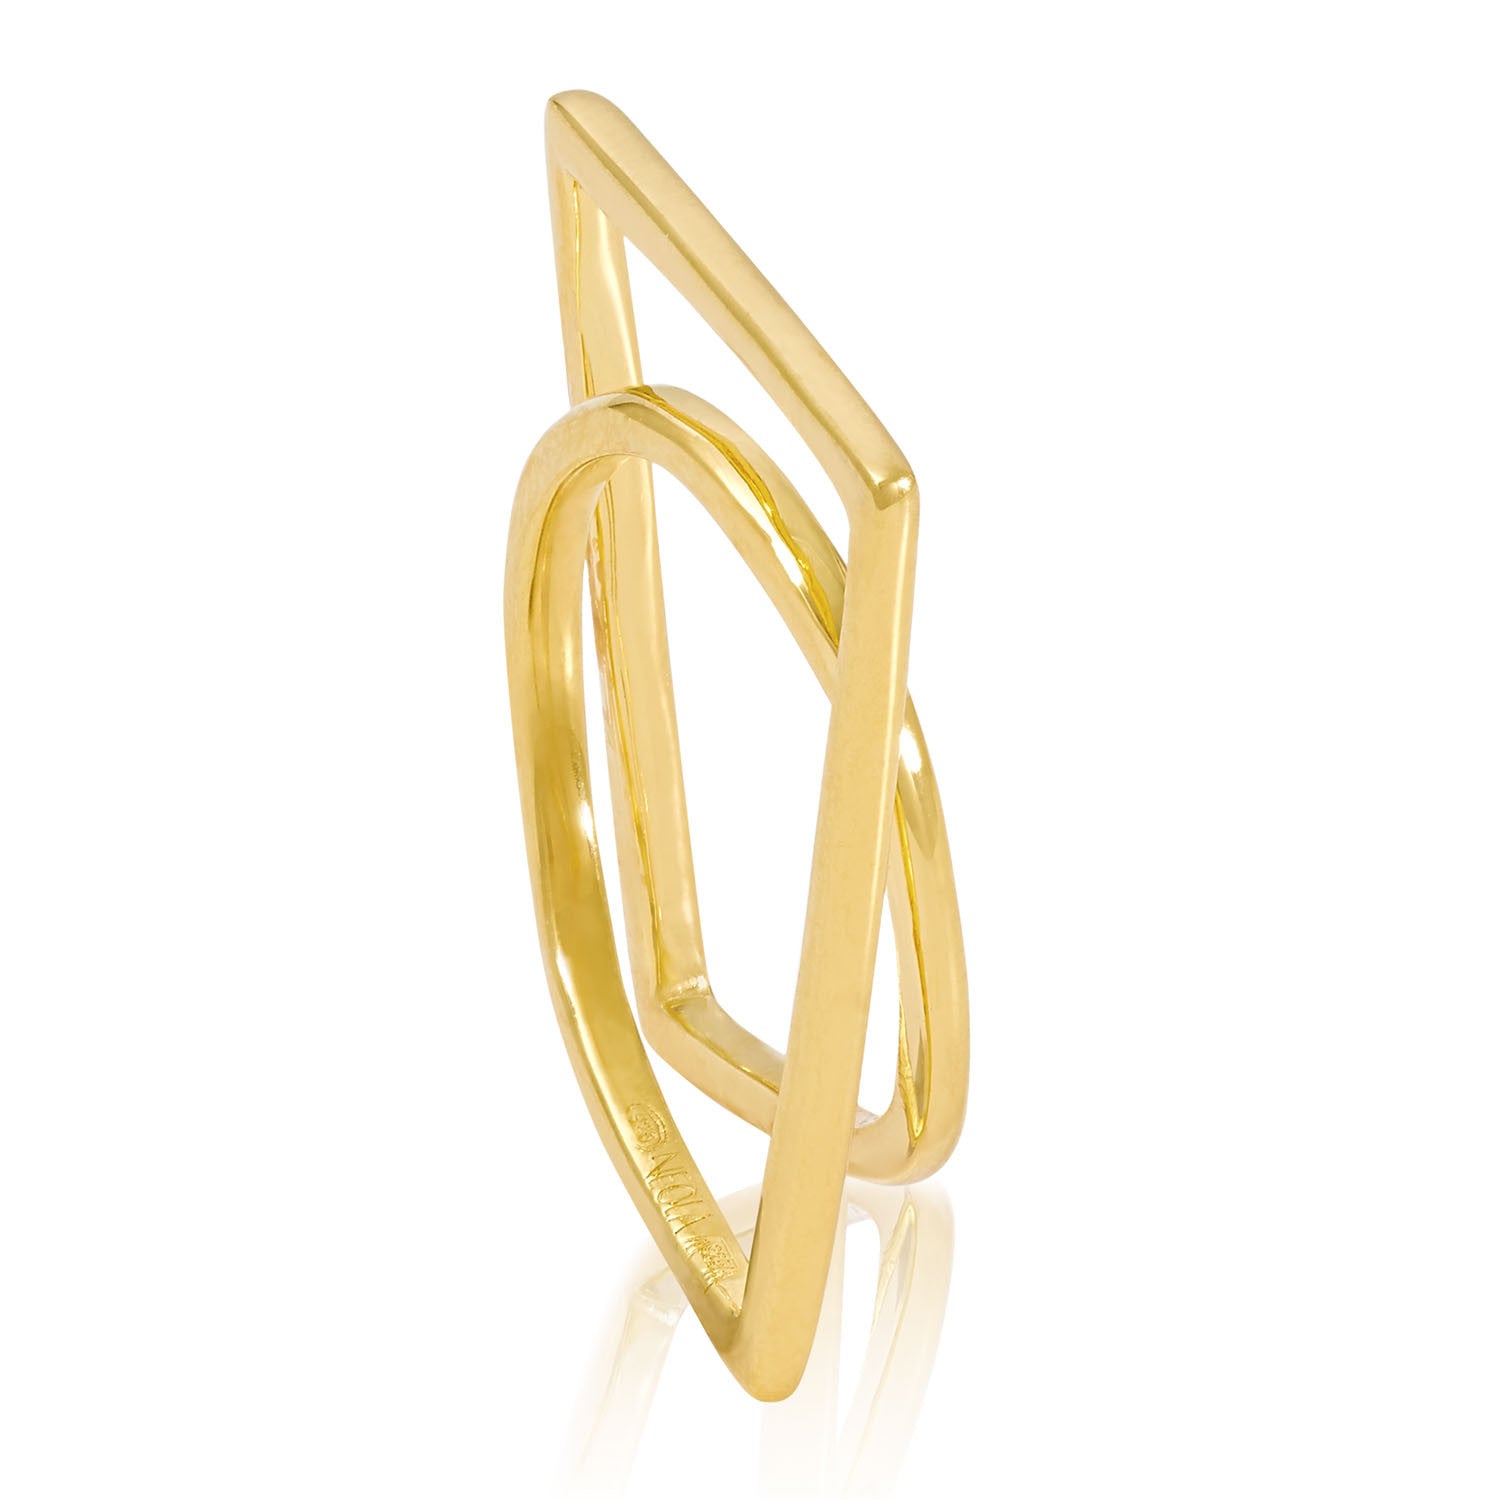 Gold vermeil sculptured ring, Geometric, unique British design